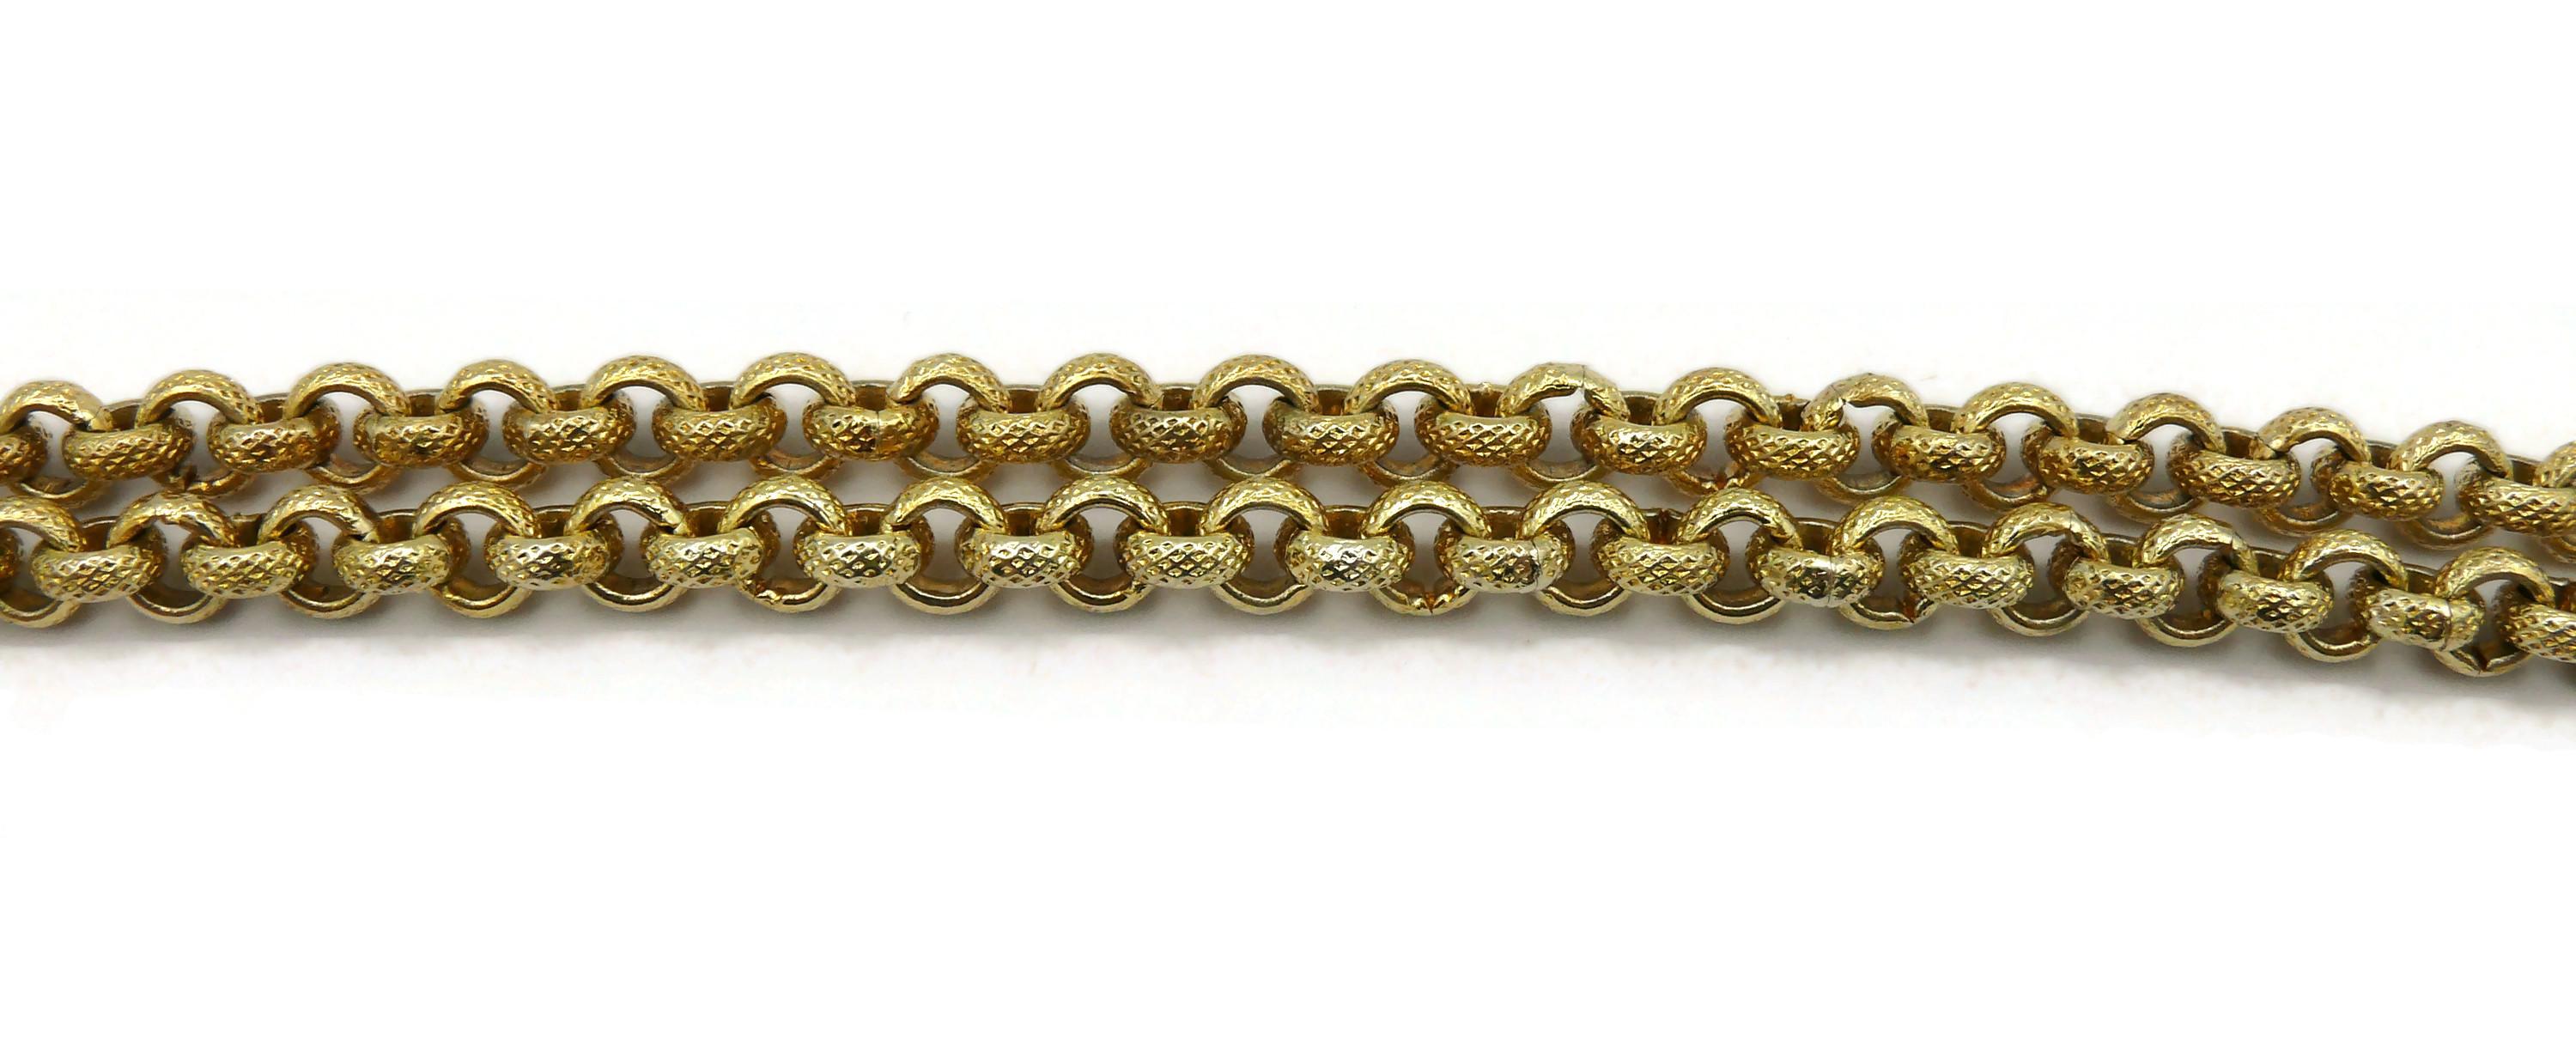 CLAIRE DEVE Vintage Massive Jewelled Pendant Necklace For Sale 5